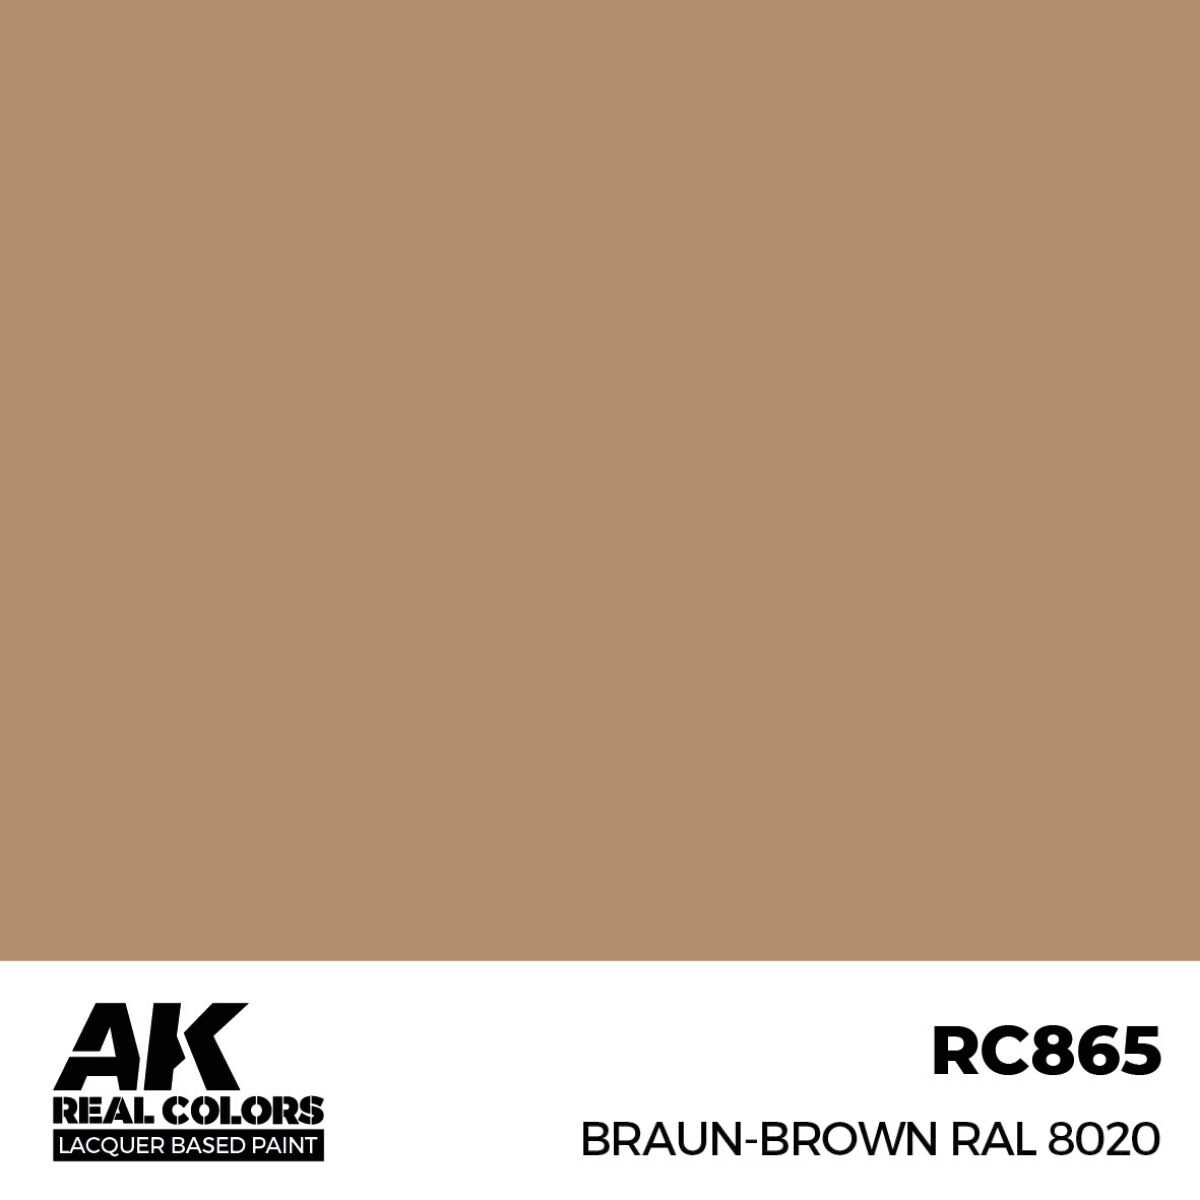 AK RC865 Real Colors Braun-Brown RAL 8020 17 ml.